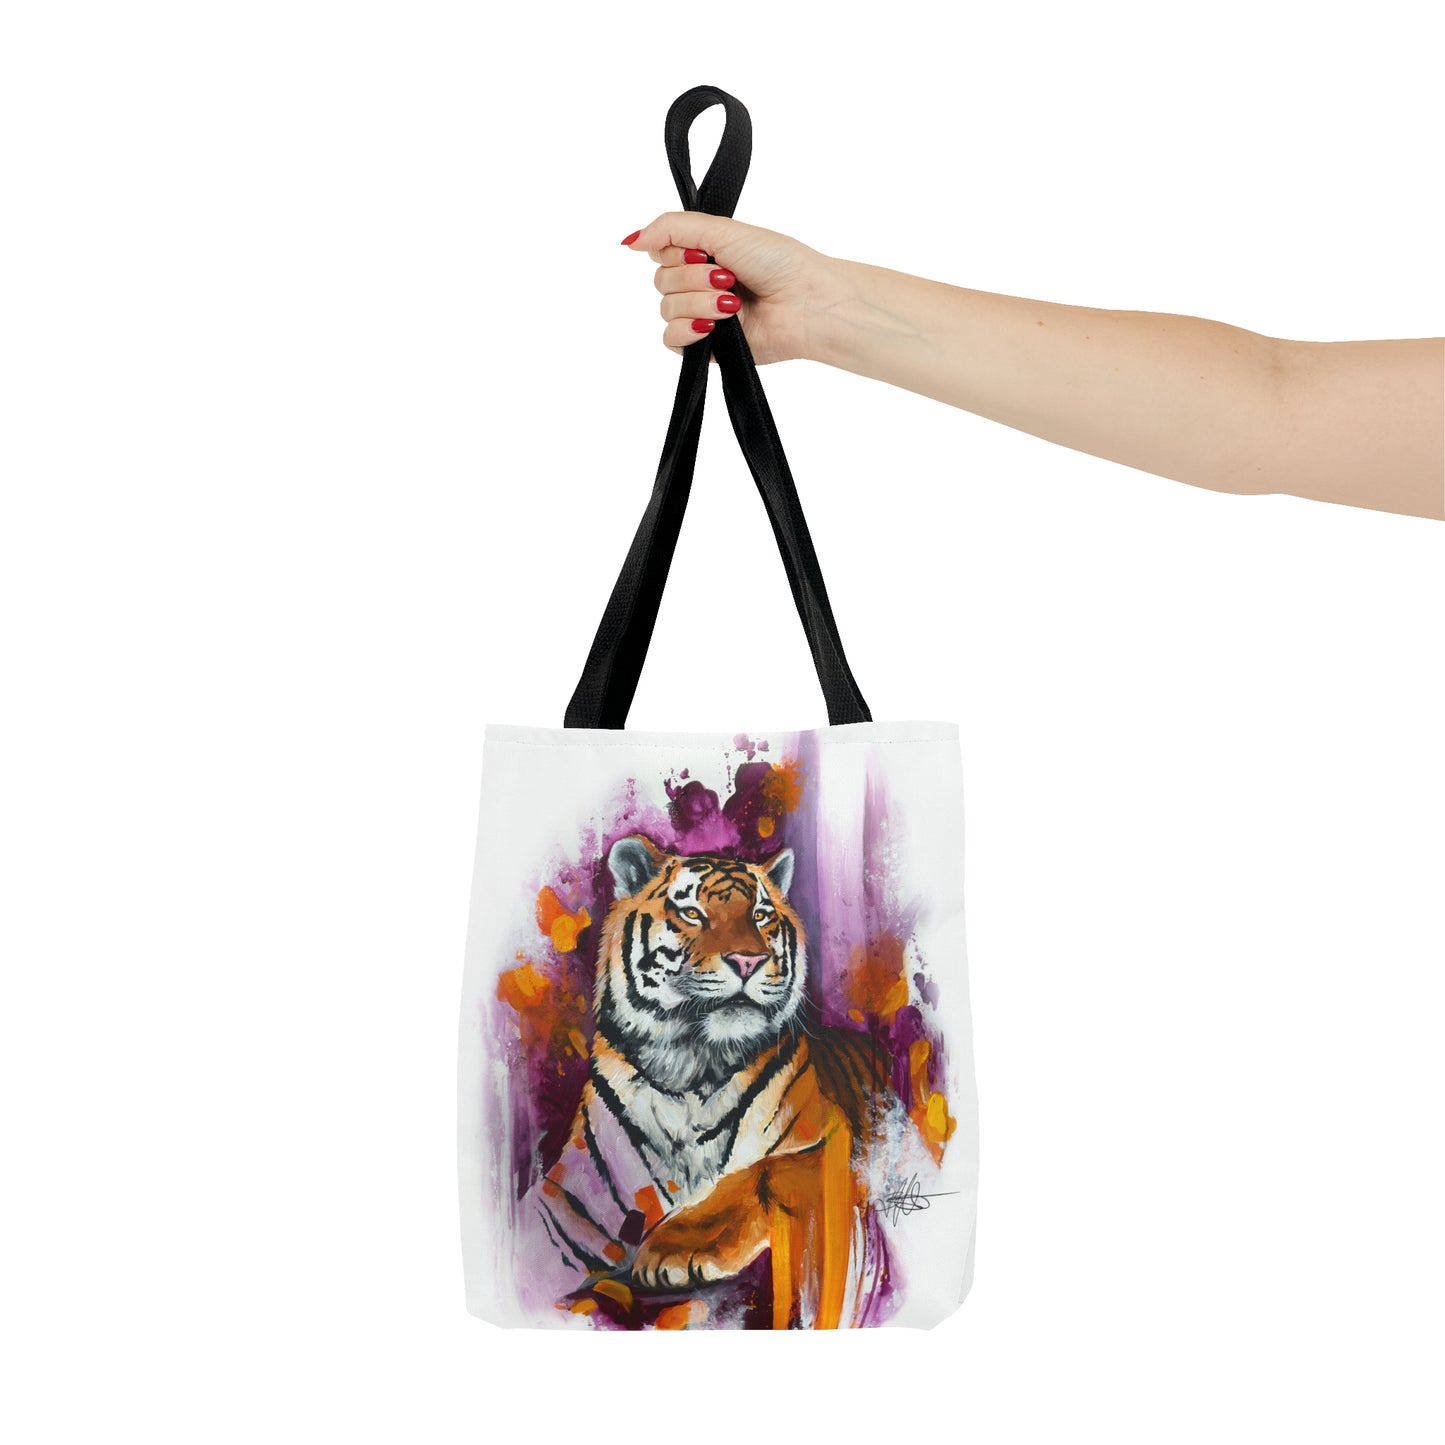 Tiger Tote Bag